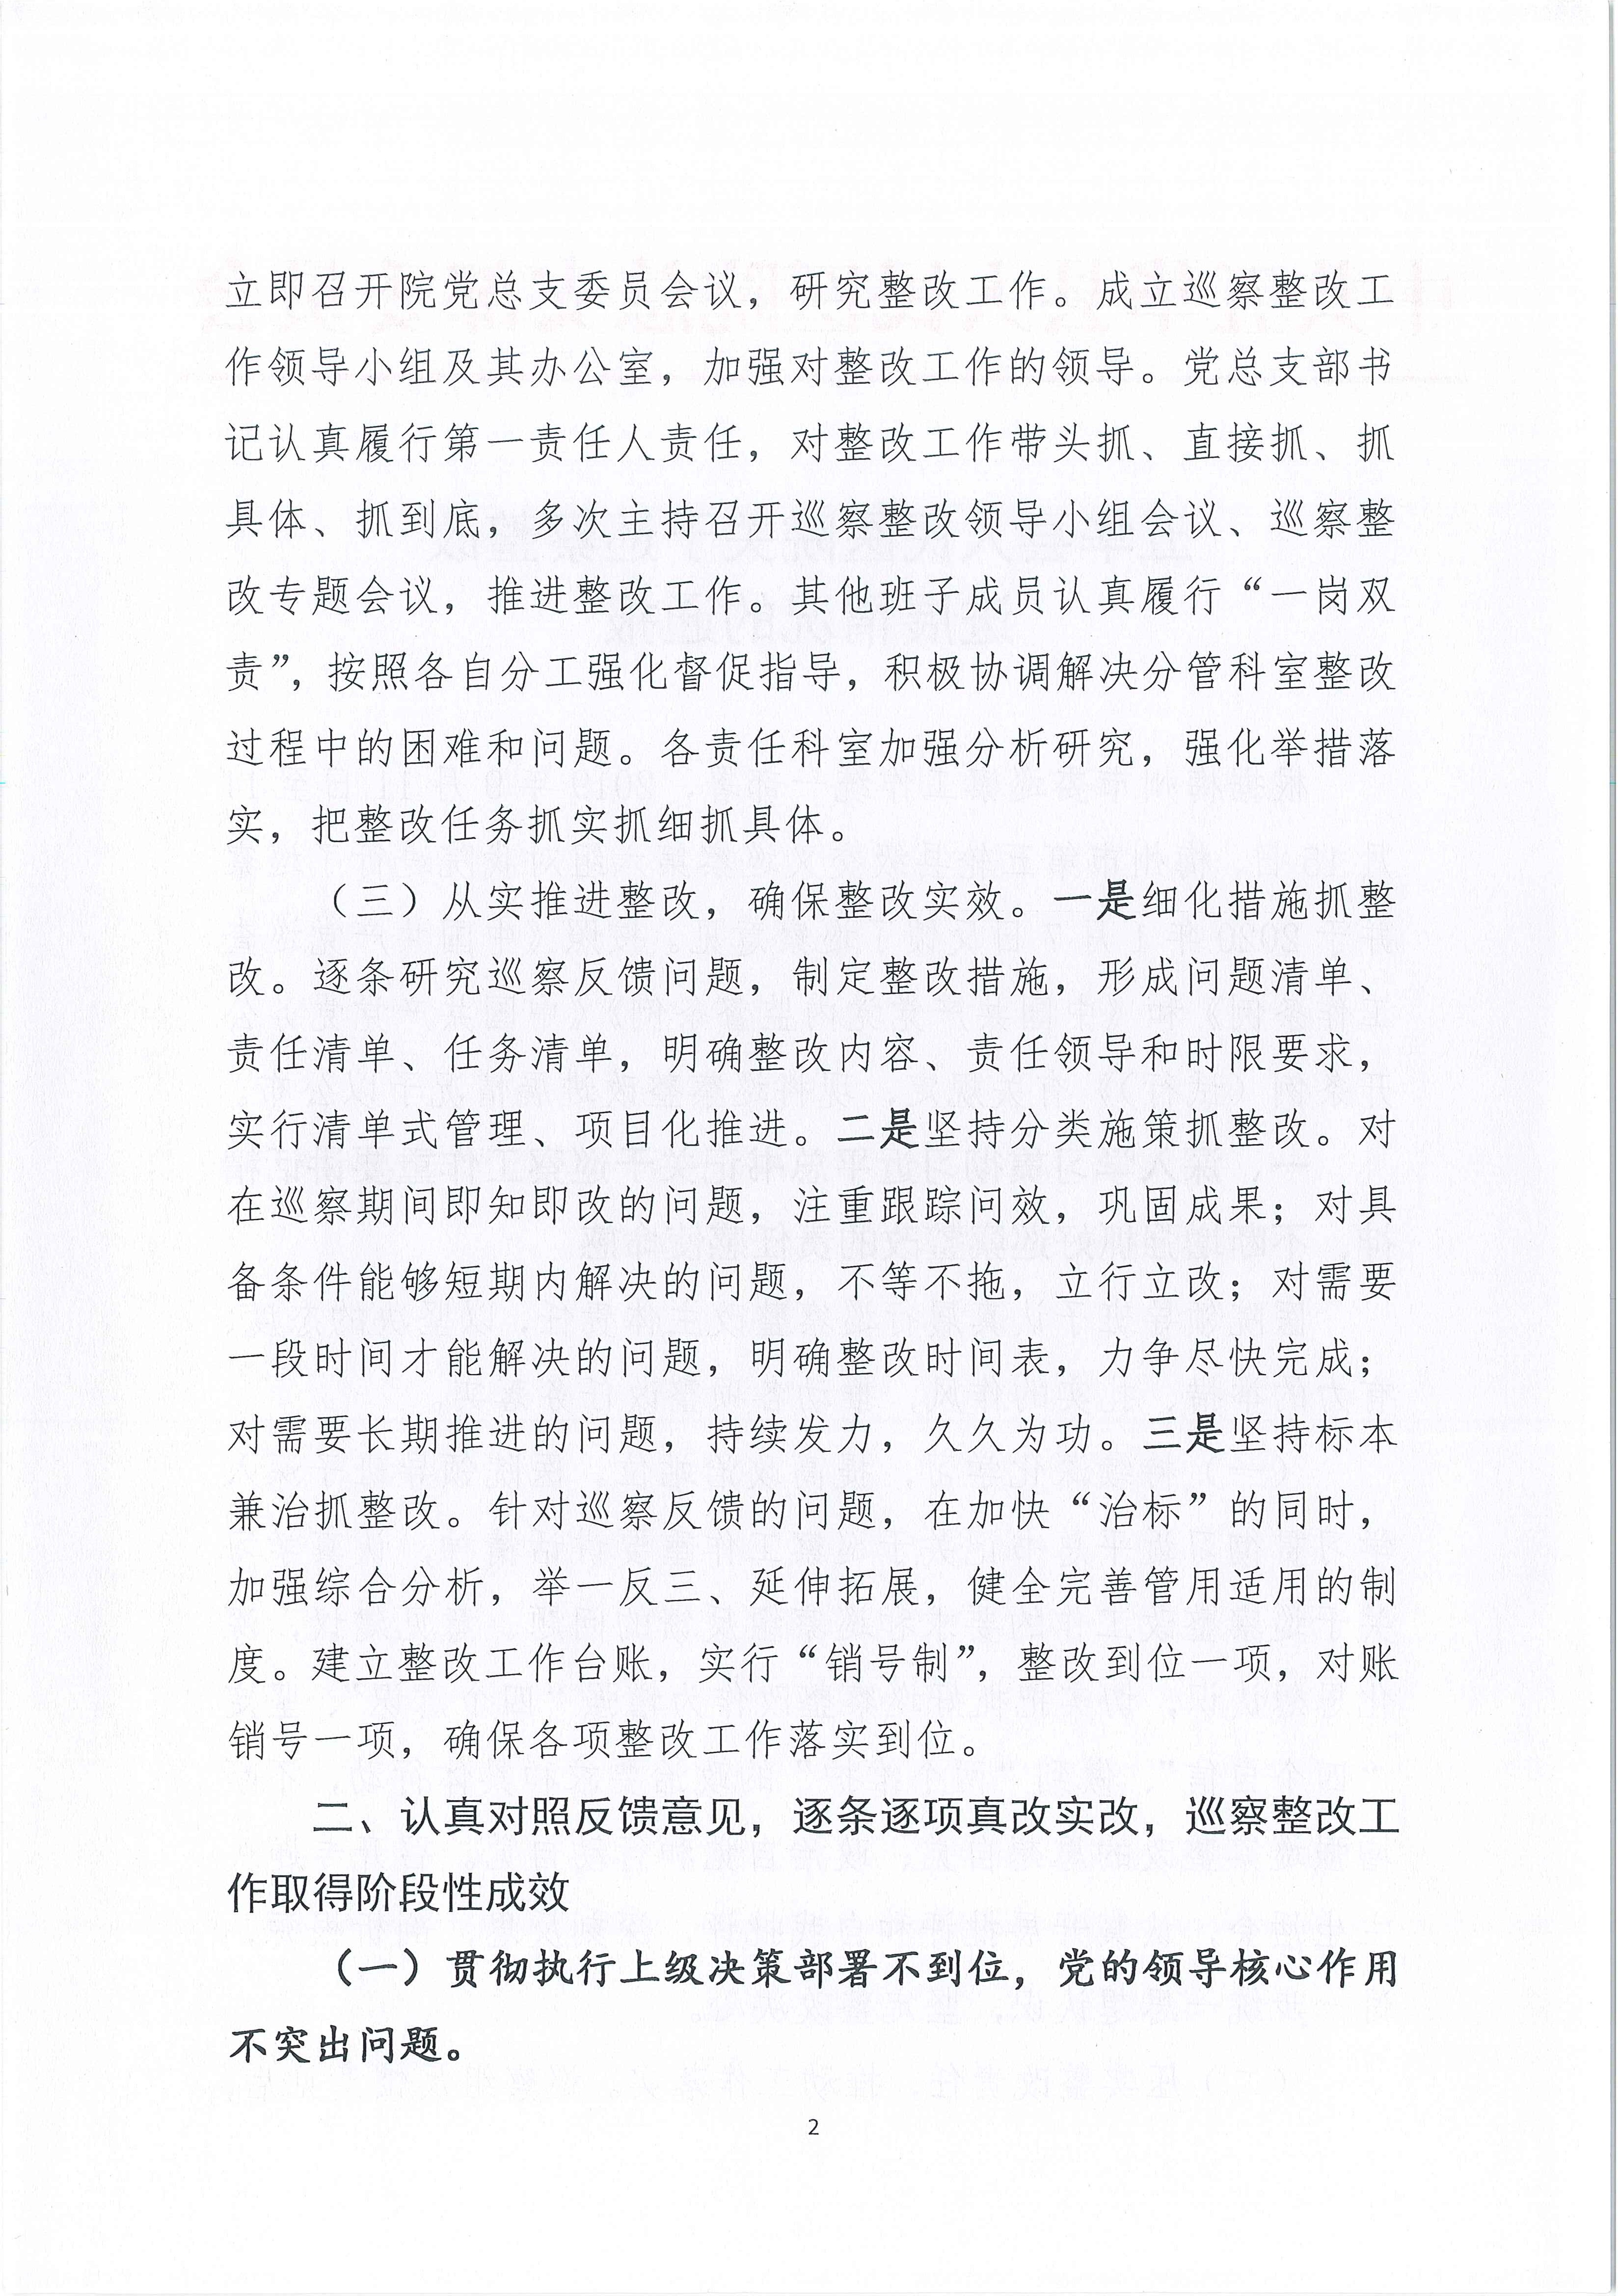 五华县人民医院关于巡察整改进展情况的通报_2